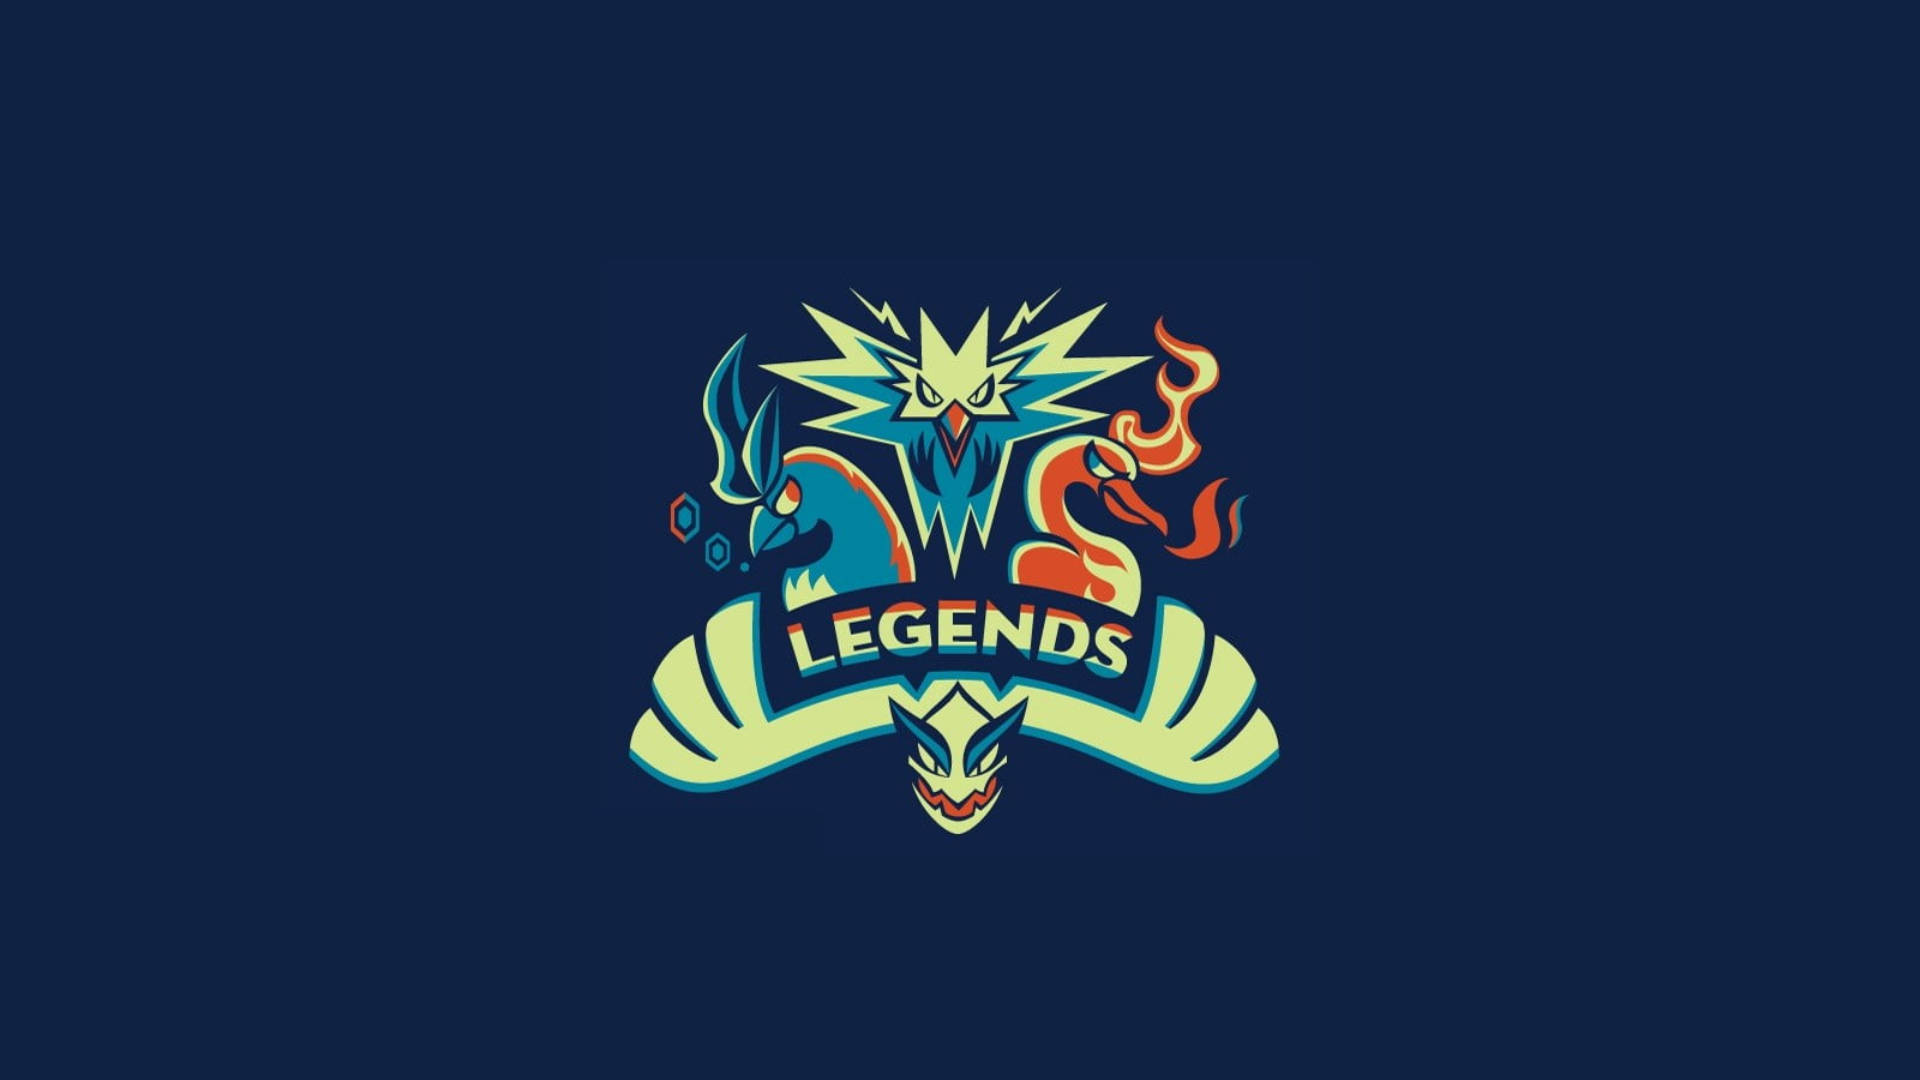 Lugia's Legends Emblem Background